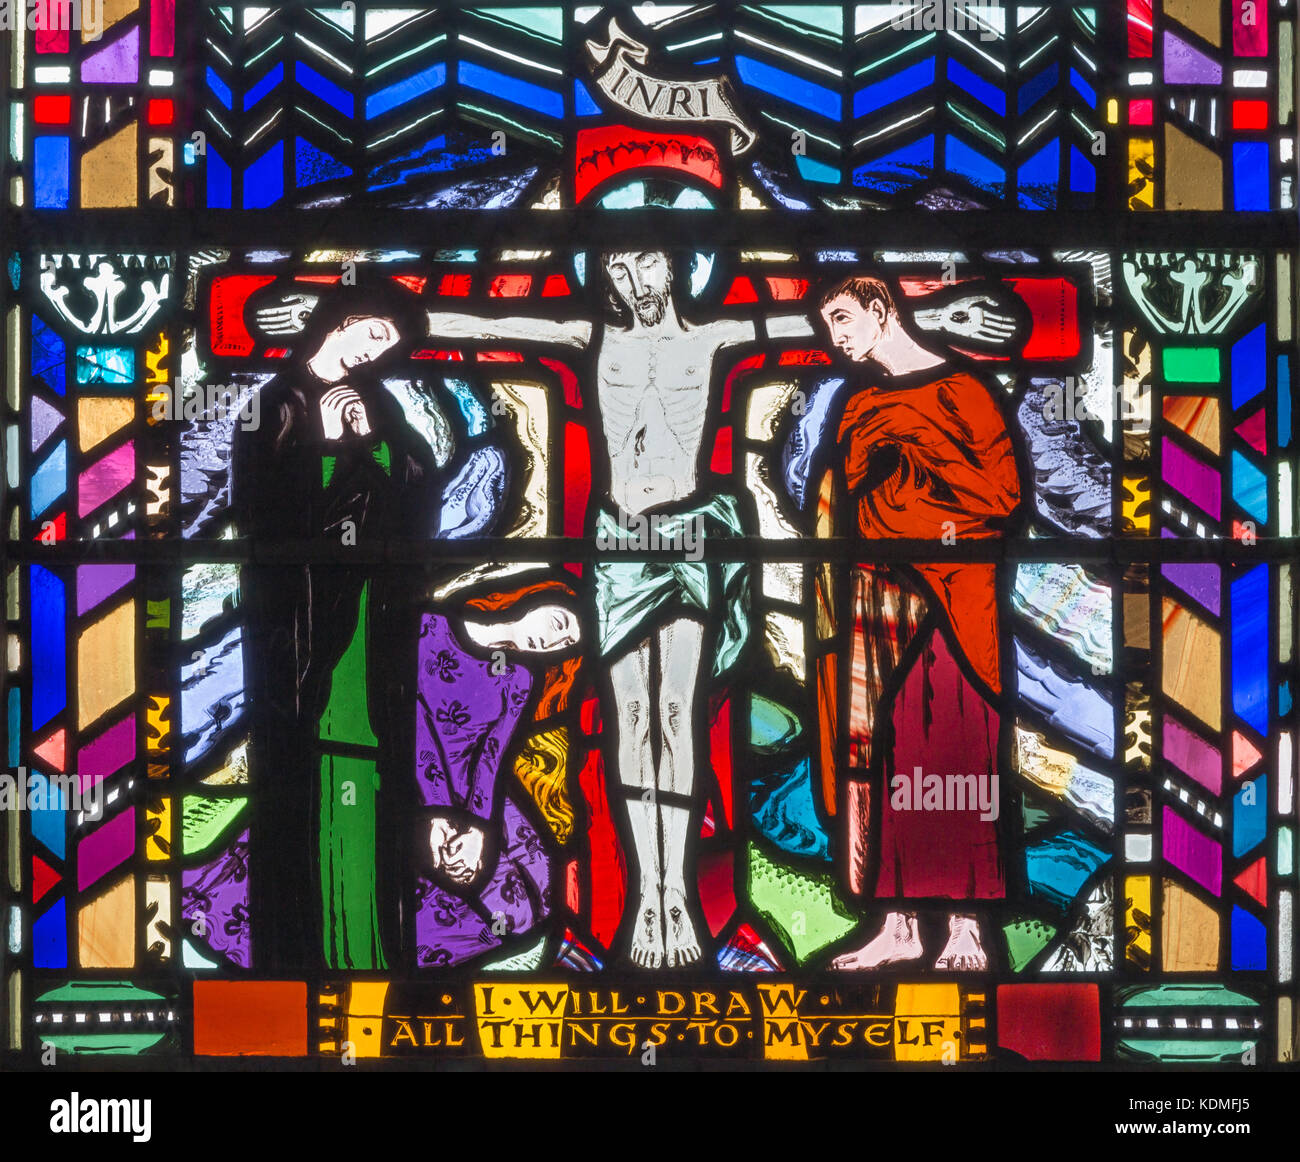 Londra, Gran Bretagna - 16 settembre 2017: il vetro macchiato della crocifissione nella chiesa st etheldreda da Charles blakeman (1953 - 1953). Foto Stock